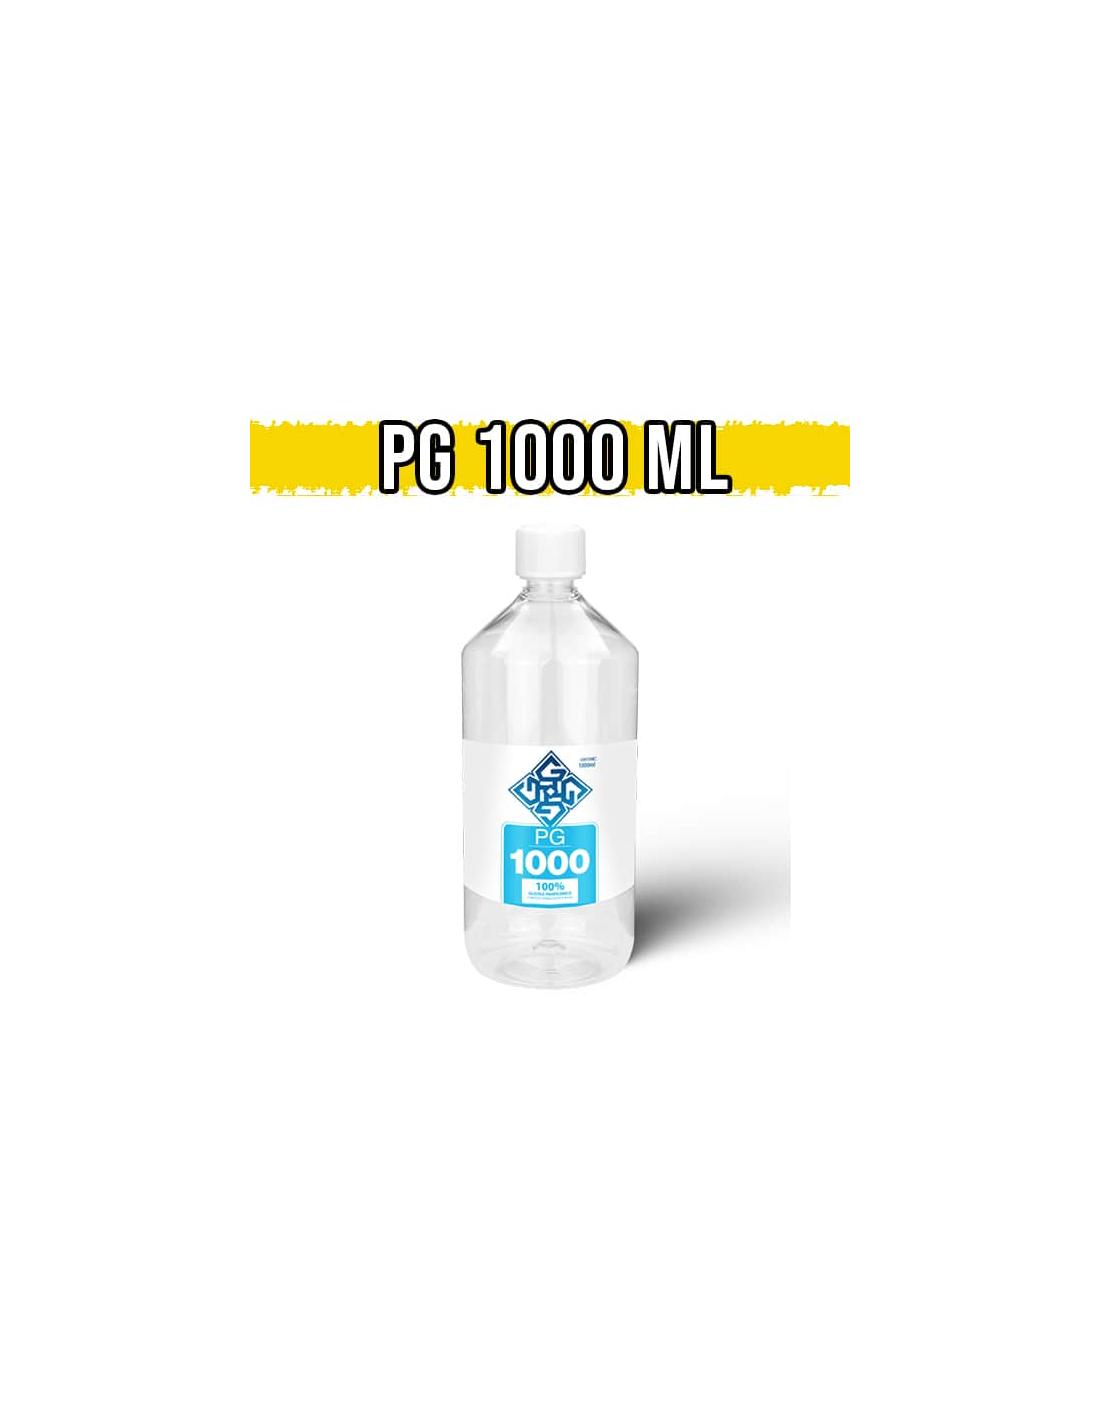 glowell glicole propilenico 1 litro (1000ml) full pg